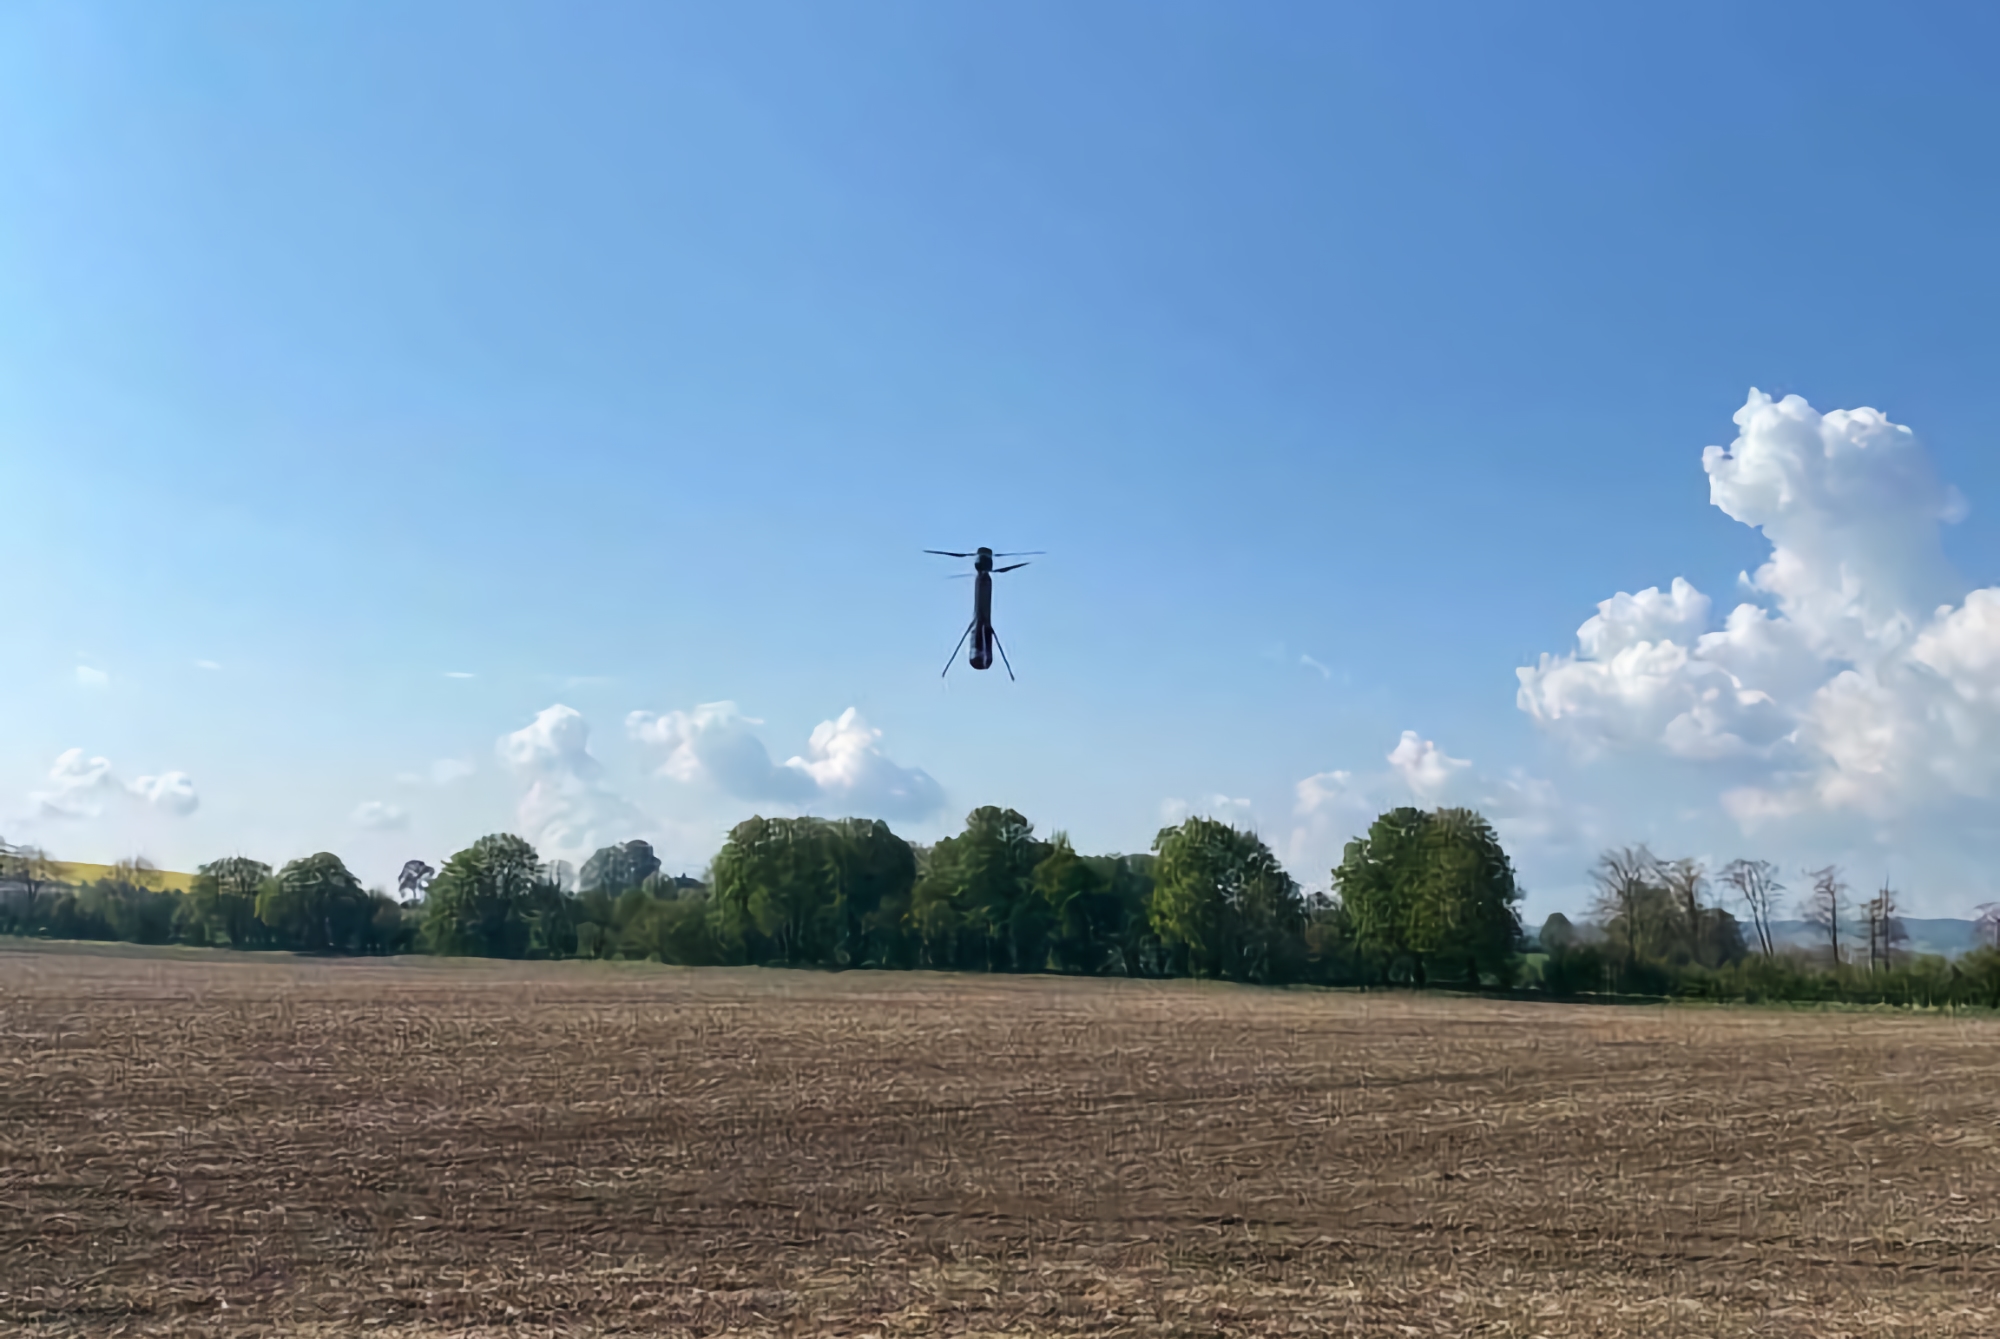 En servicio con las Fuerzas Armadas de Ucrania, notaron un dron kamikaze inusual con un sistema de despegue vertical. Podría ser un raro PHOLOS UAV